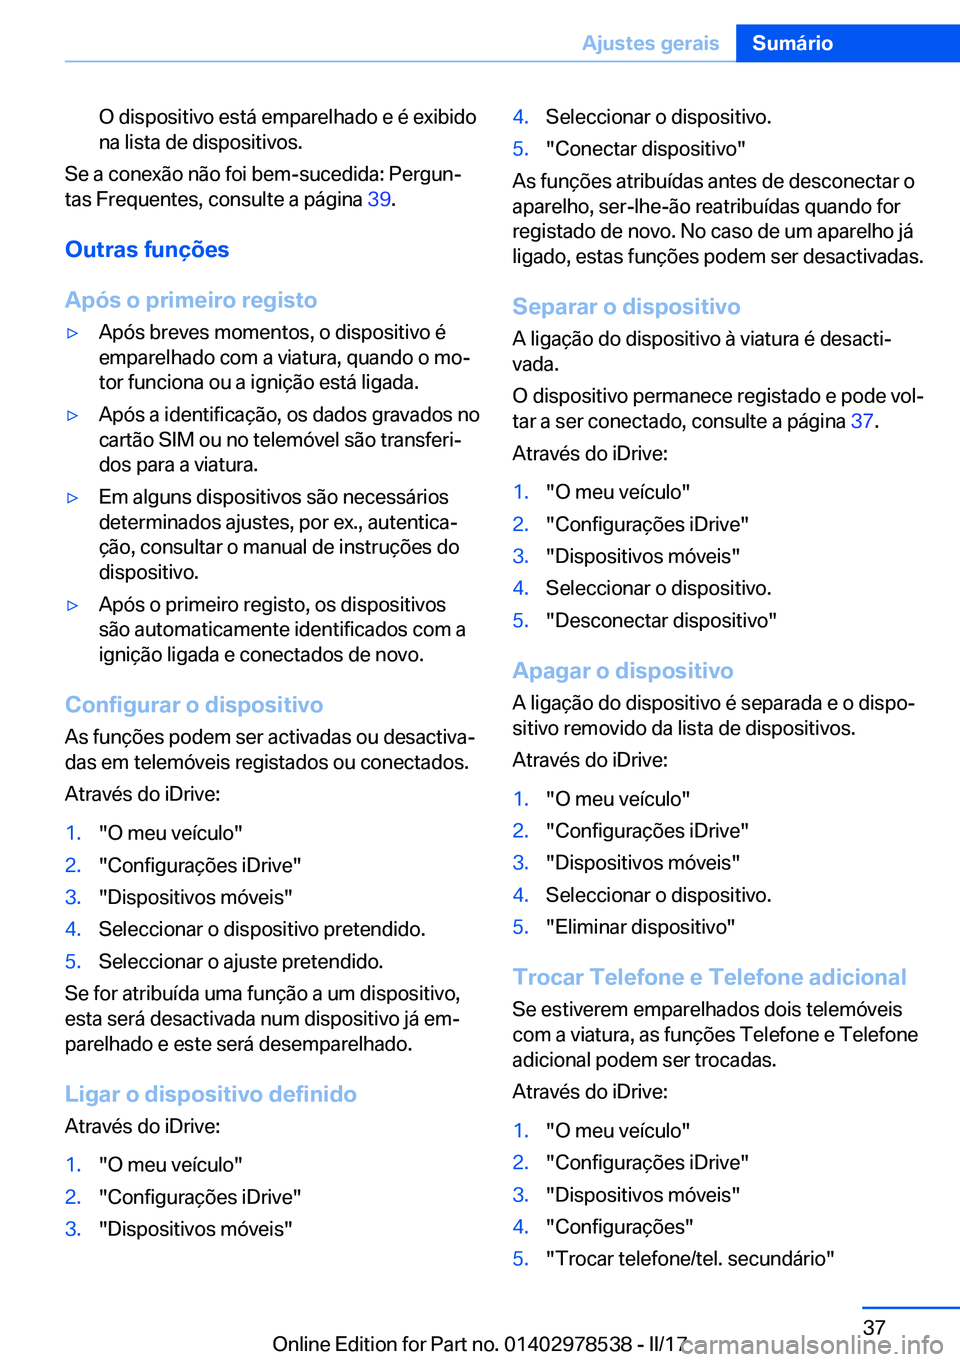 BMW X6 M 2017  Manual do condutor (in Portuguese) �O� �d�i�s�p�o�s�i�t�i�v�o� �e�s�t�á� �e�m�p�a�r�e�l�h�a�d�o� �e� �é� �e�x�i�b�i�d�o�n�a� �l�i�s�t�a� �d�e� �d�i�s�p�o�s�i�t�i�v�o�s�.
�S�e� �a� �c�o�n�e�x�ã�o� �n�ã�o� �f�o�i� �b�e�m�-�s�u�c�e�d�